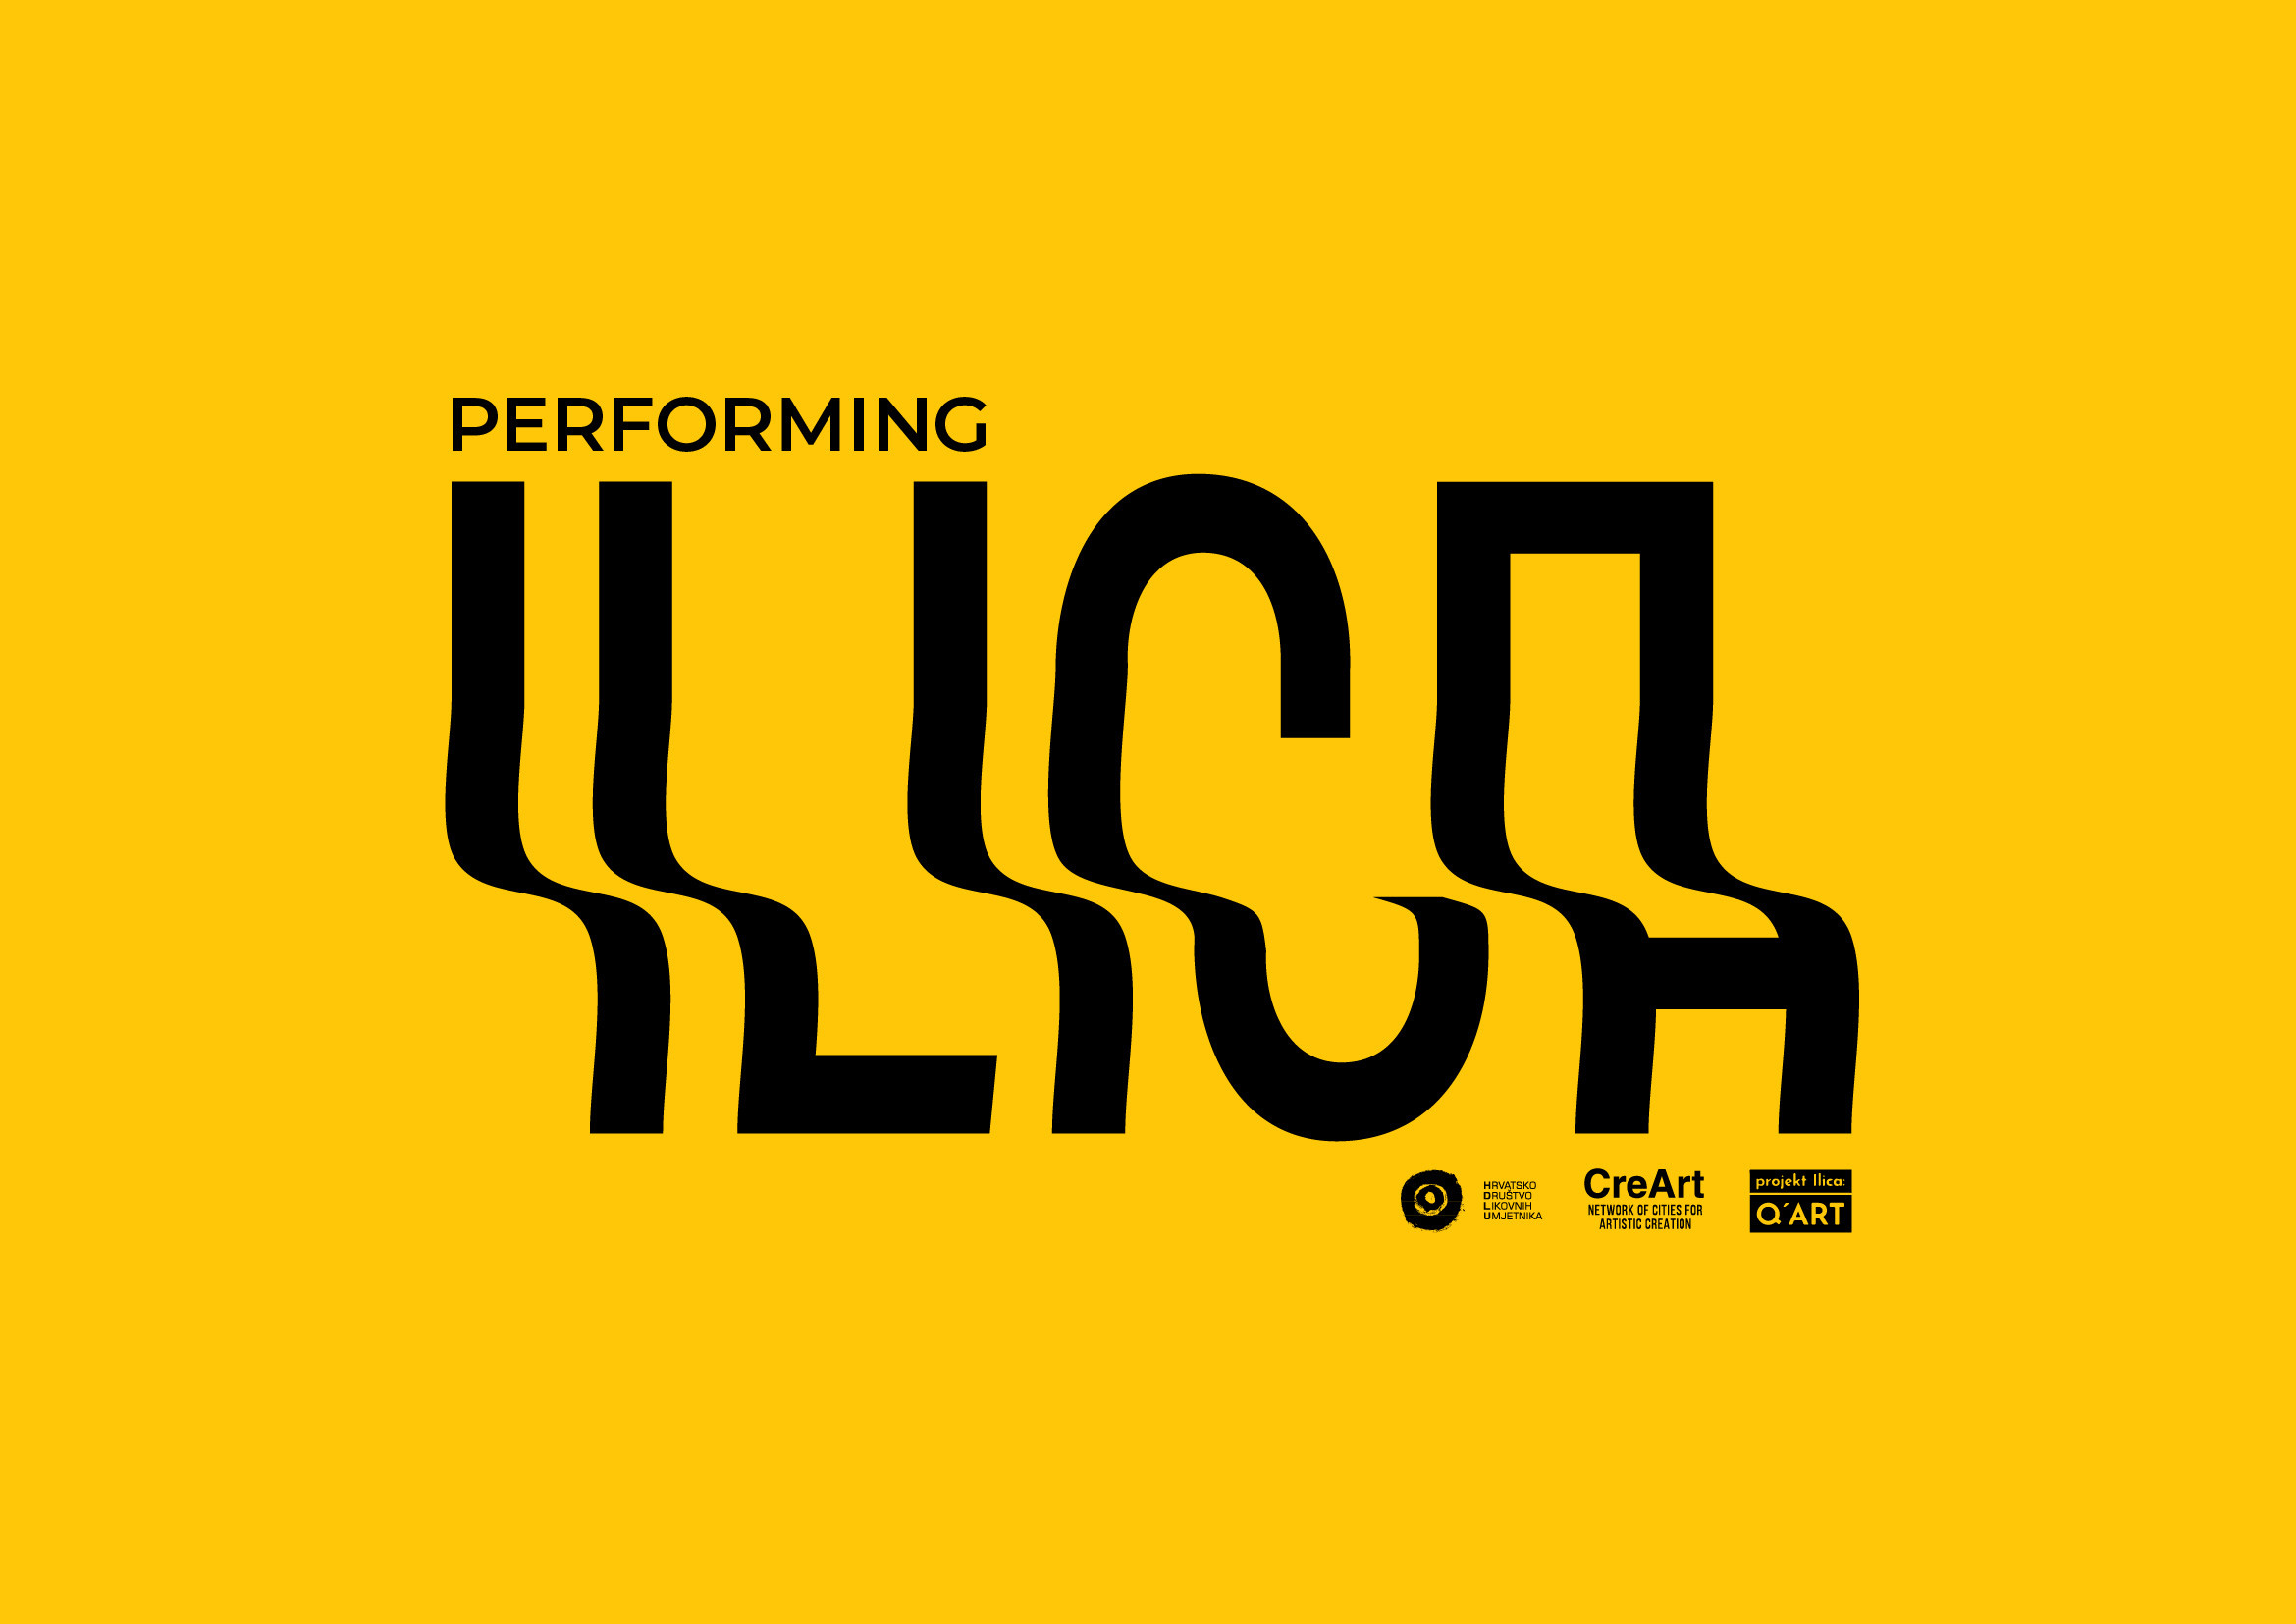 Projekt Ilica, Q'ART, Performing Ilica